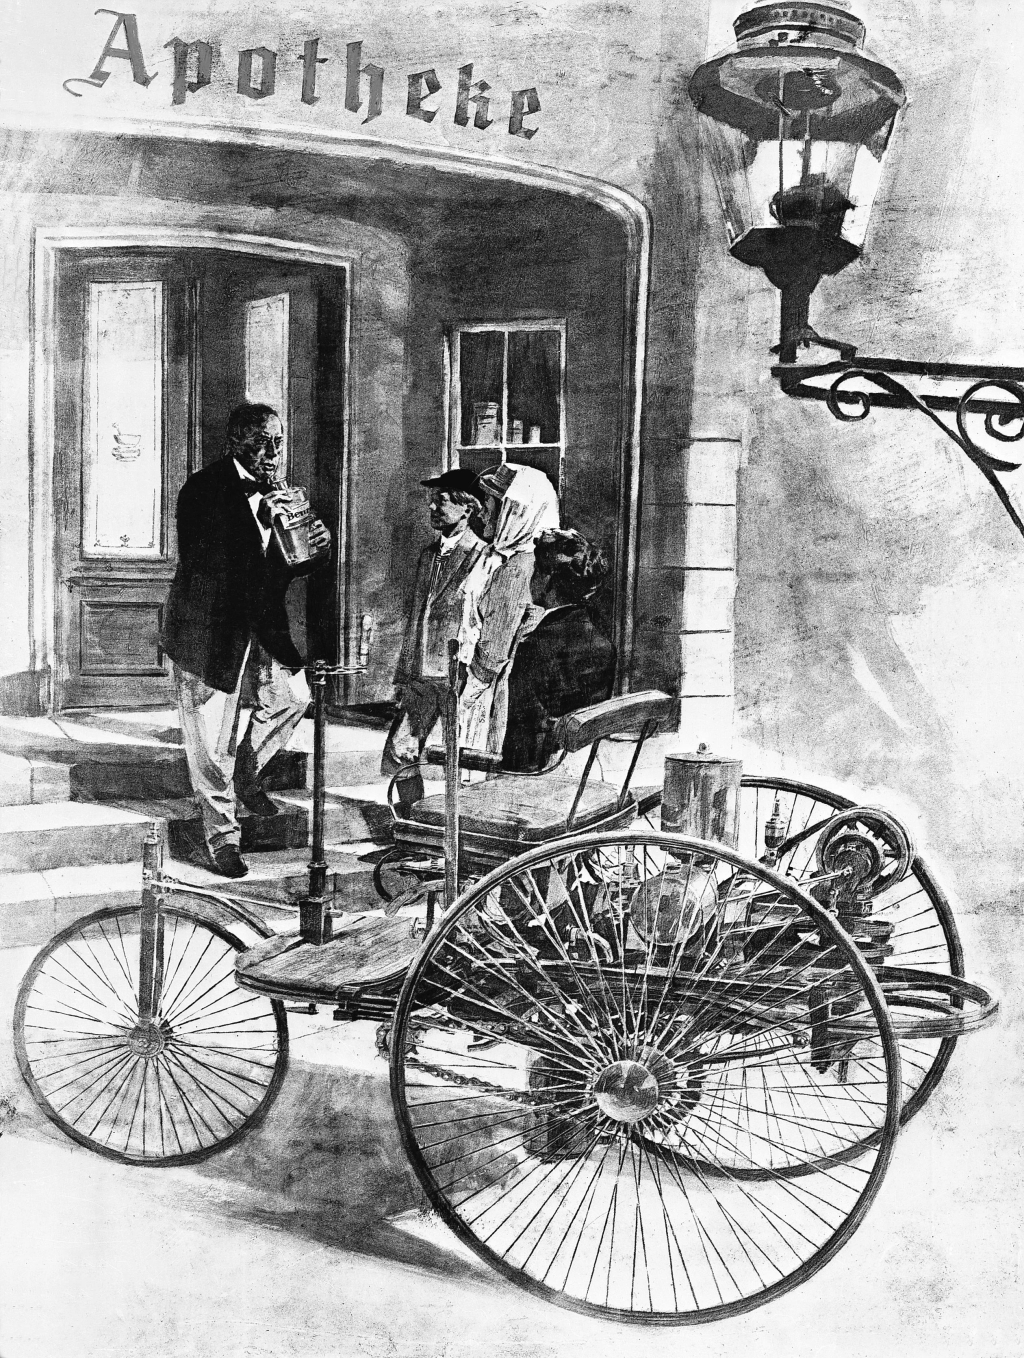 Historia de la gasolina: La gasolina ligera fue probablemente el combustible que Carl Benz incluyó en la patente de su Benz Patent-Motorwagen Nummer 1 de 1886 como „aceite muy volátil“